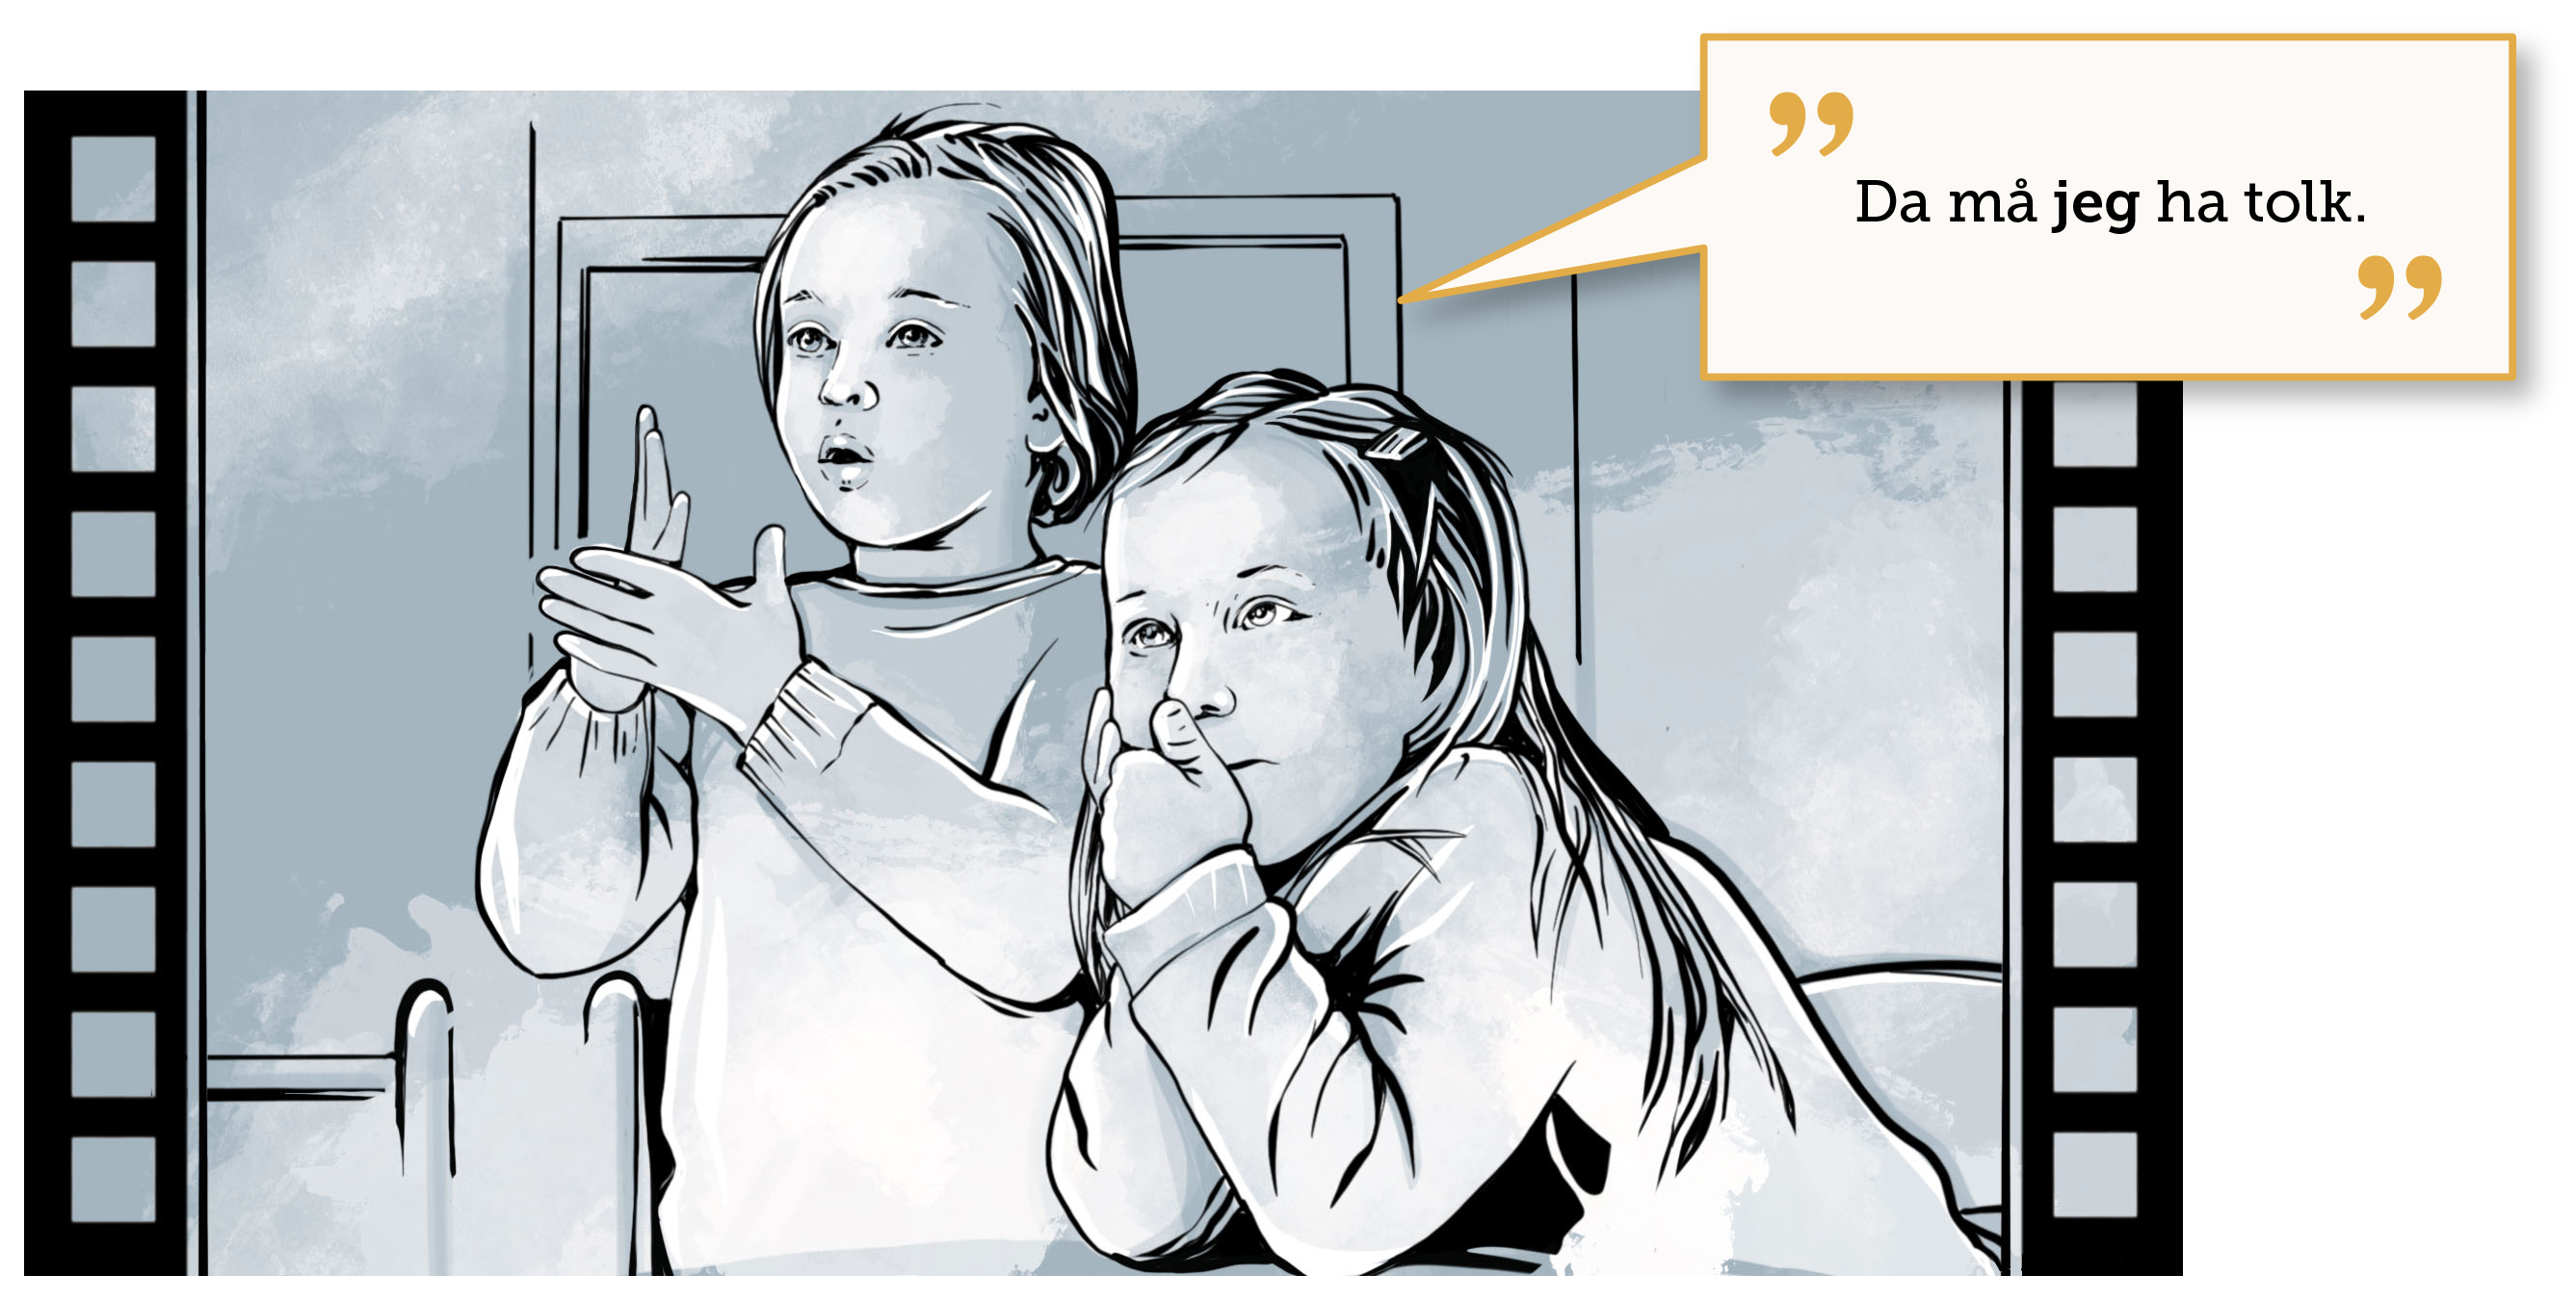 Illustrasjon fra film med to barn, ett snakker tegnspråk og sier:  "Da må jeg ha tolk".